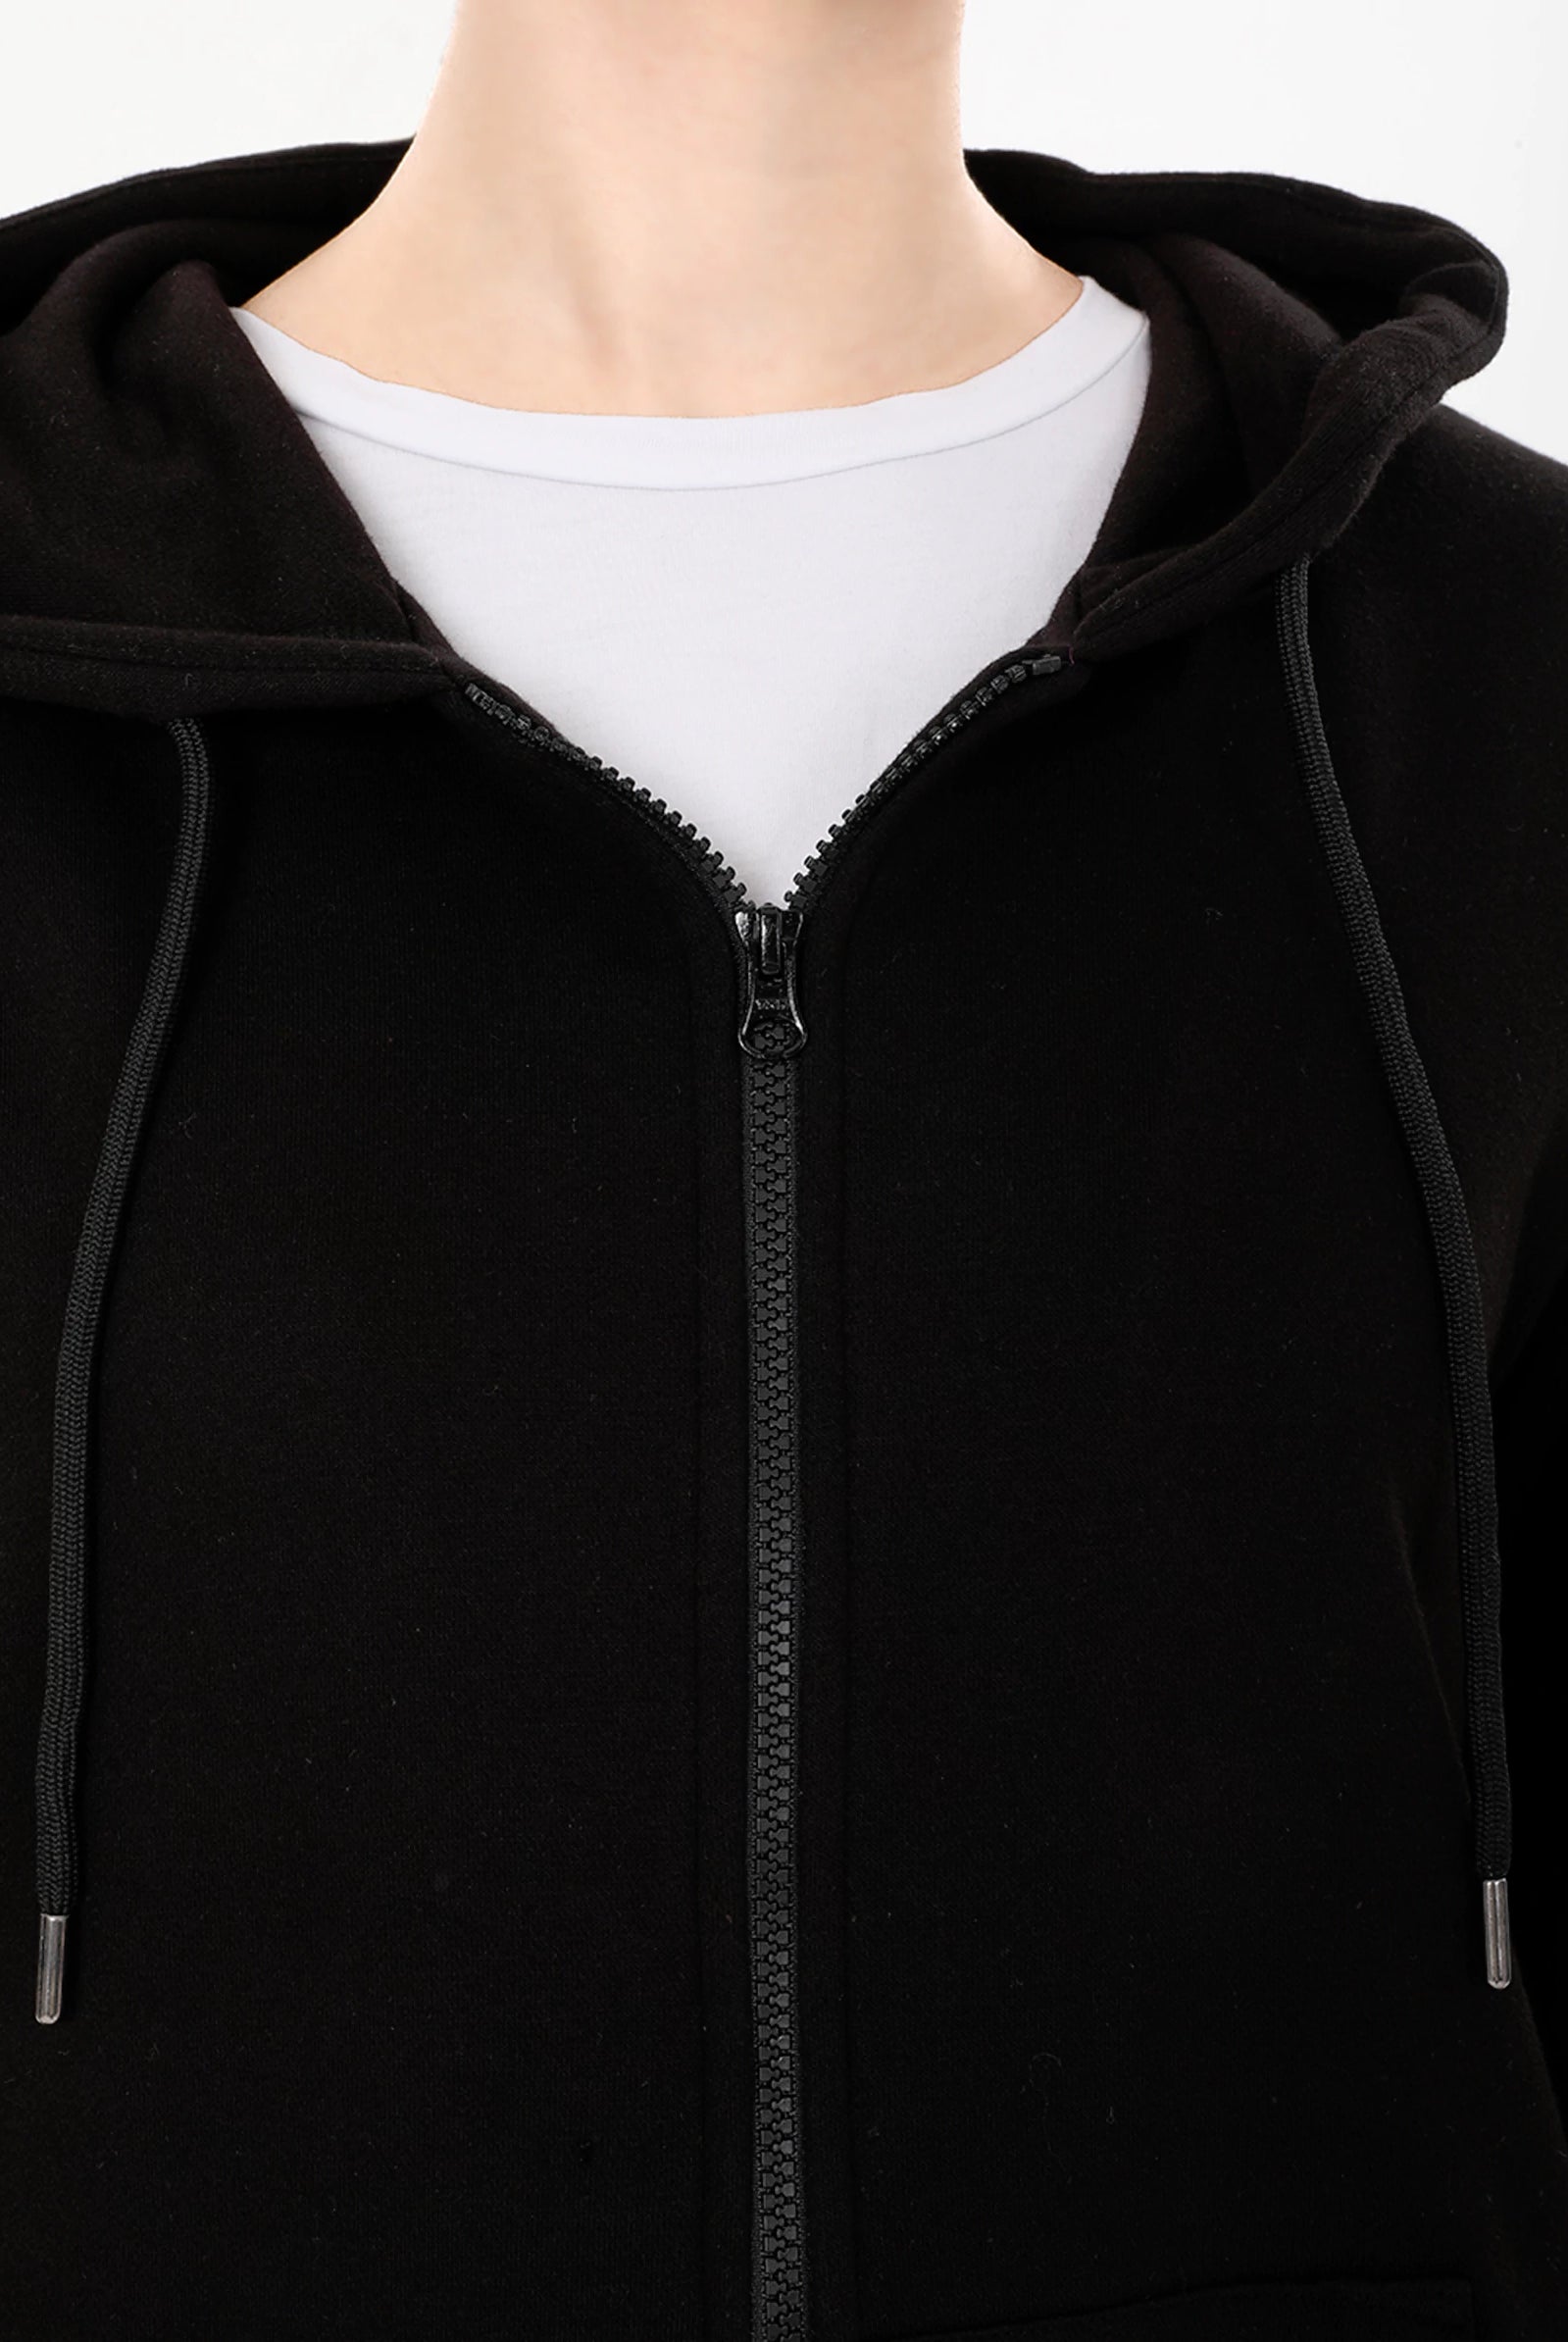 black zip up hoodie women's uk